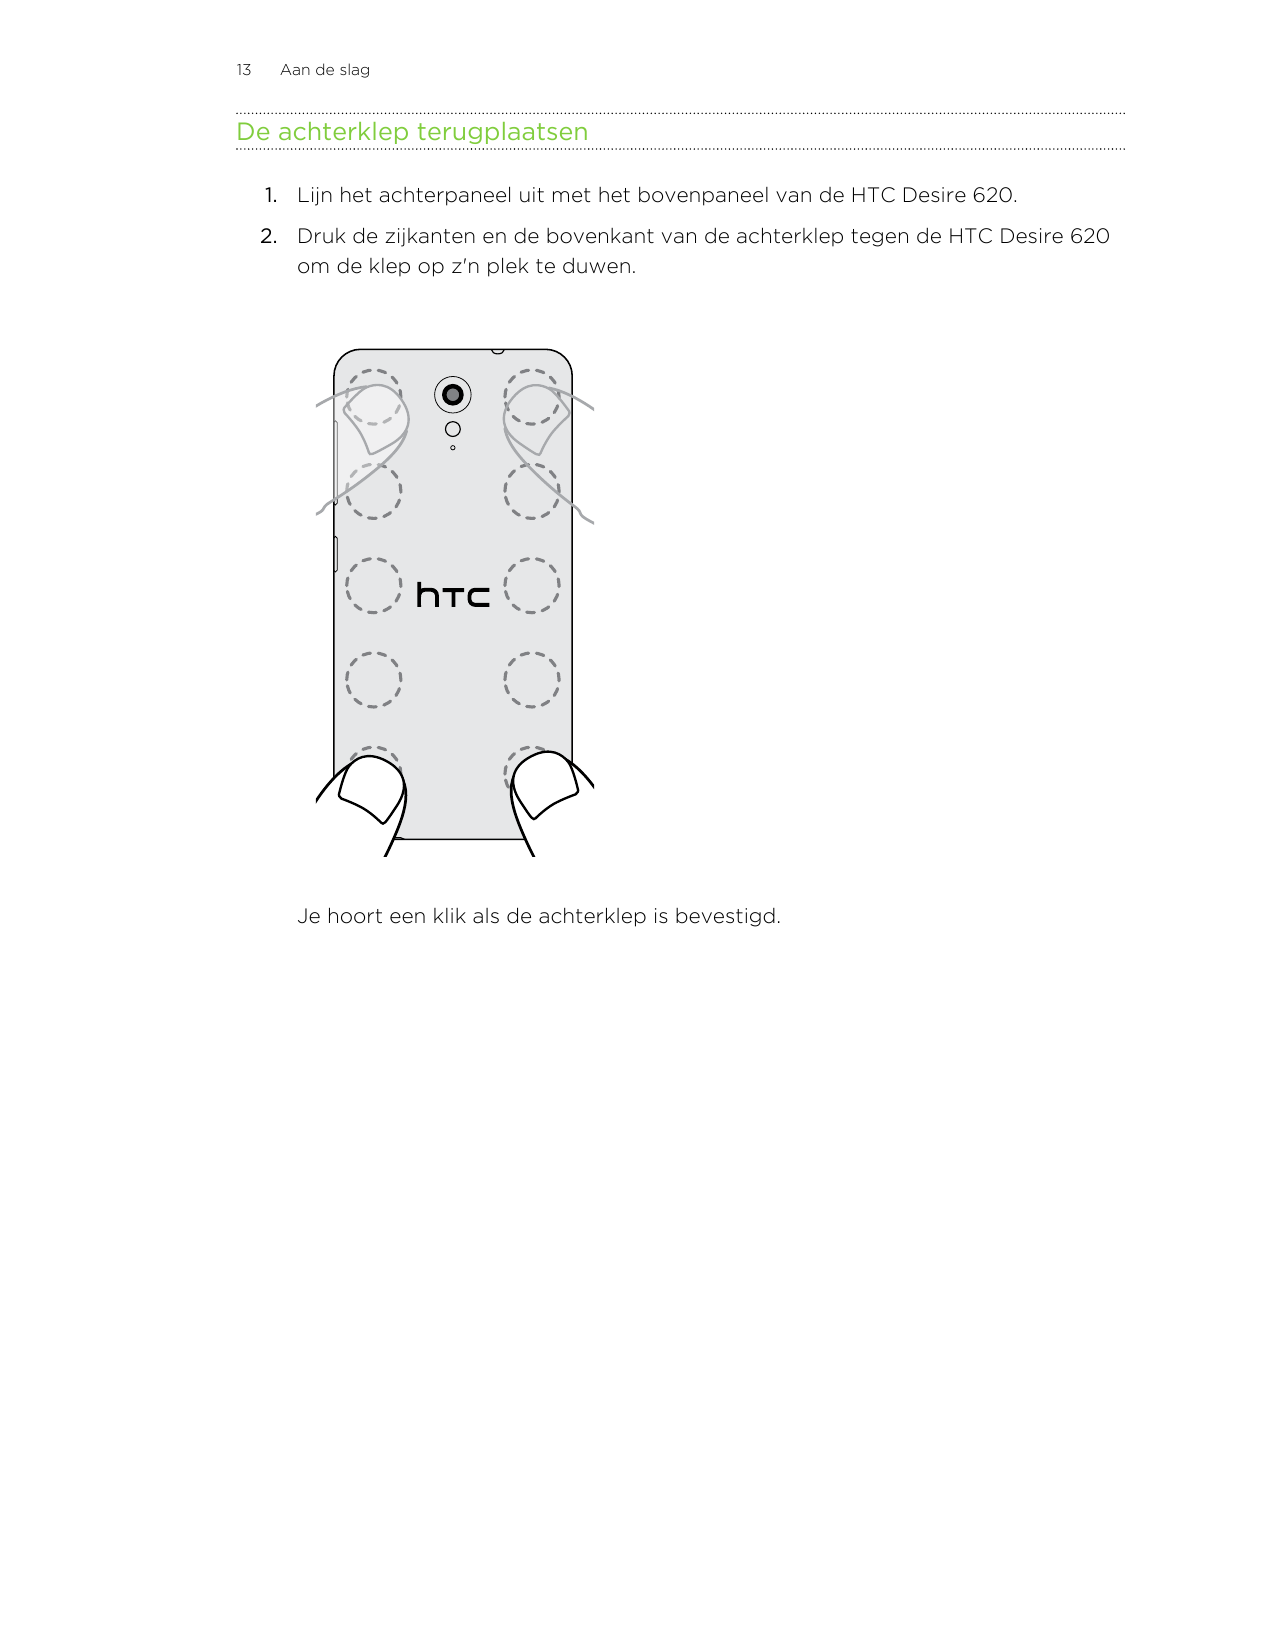 13Aan de slagDe achterklep terugplaatsen1. Lijn het achterpaneel uit met het bovenpaneel van de HTC Desire 620.2. Druk de zijkan